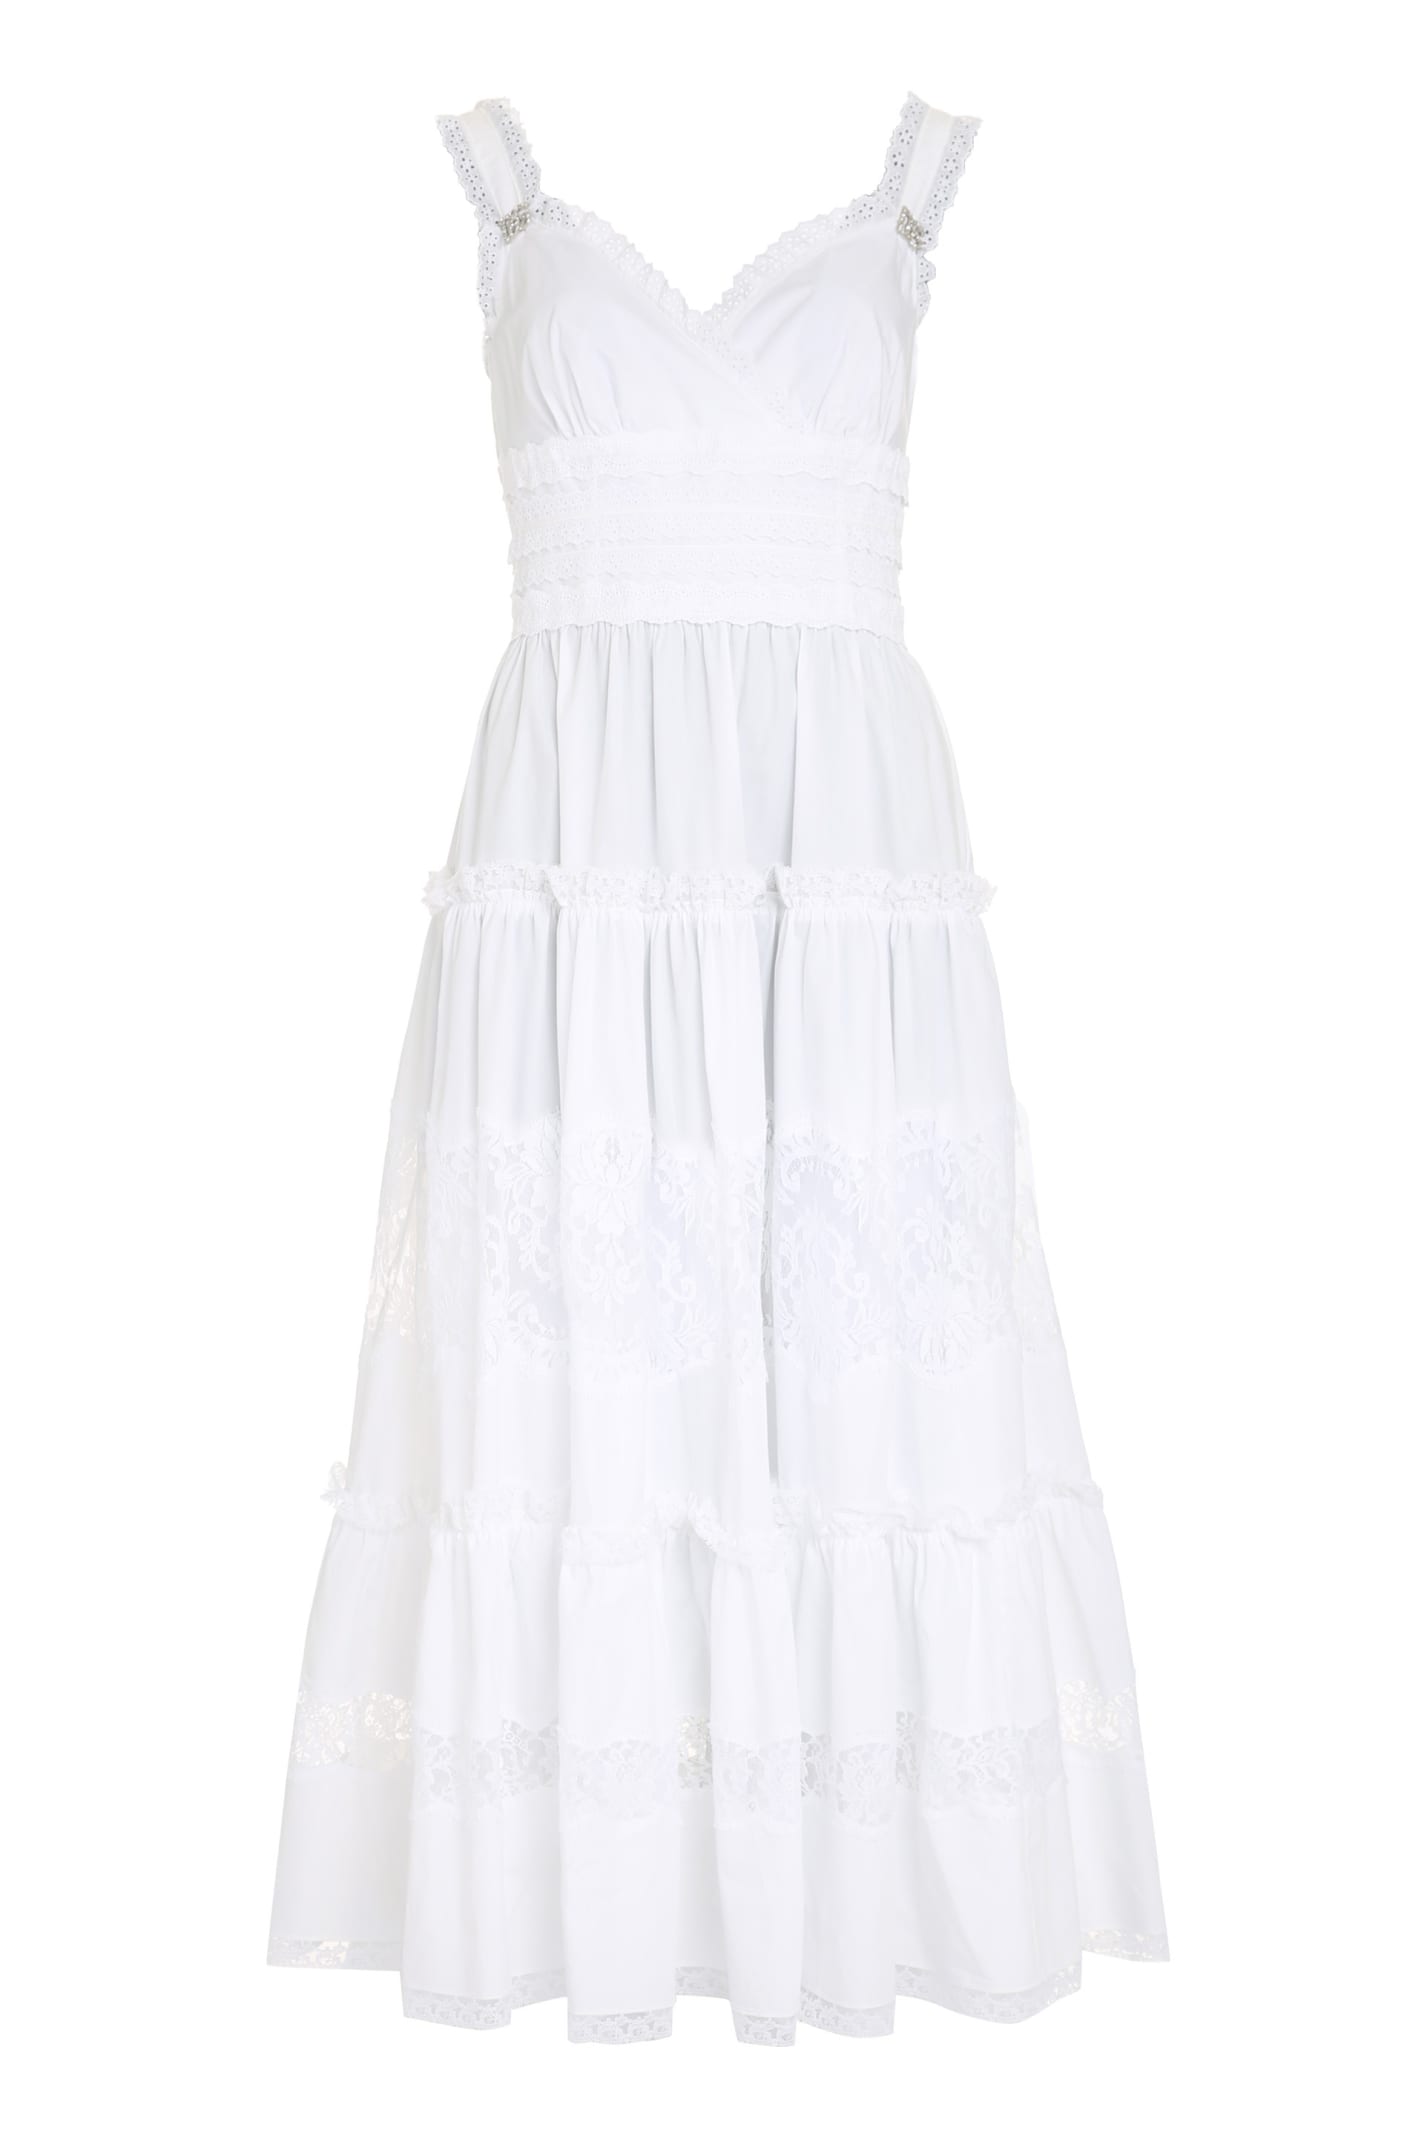 Dolce & Gabbana Lace Inserts Cotton Dress